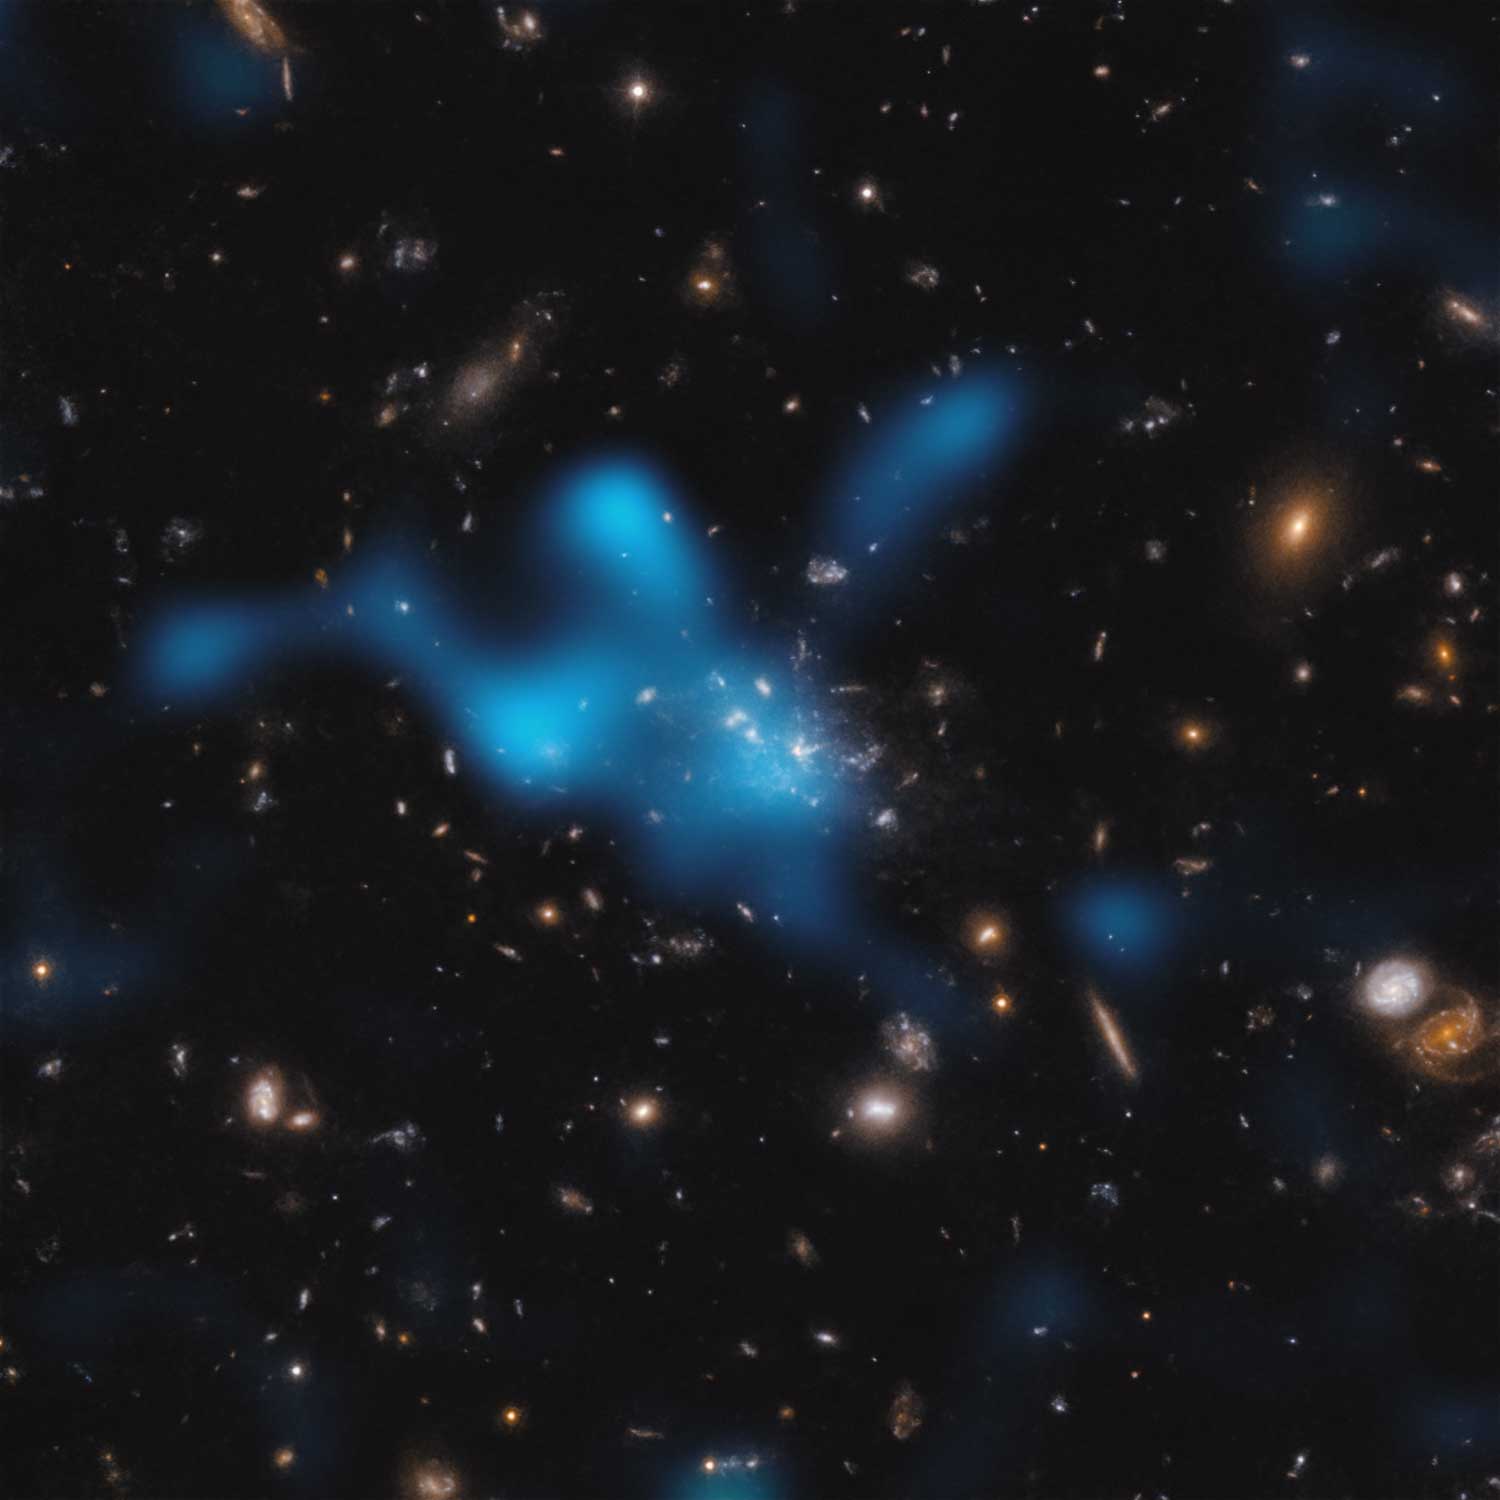 Effetto Sunyaev-Zeldovich nel protoammasso Spiderweb
L'immagine mostra il protoammasso attorno alla galassia Spiderweb (formalmente nota come MRC 1138-262), visto in un momento in cui l'Universo aveva solo 3 miliardi di anni. La maggior parte della massa del protoammasso non risiede nelle galassie visibili al centro dell'immagine, ma nel gas noto come mezzo intracluster (ICM). Il gas caldo nell'ICM è mostrato come una nuvola blu sovrapposta. 
Il gas caldo è stato rilevato con l'Atacama Large Millimeter/submillimeter Array (ALMA), di cui ESO è partner. Quando la luce del fondo cosmico a microonde - la radiazione relitta del Big Bang - attraversa l'ICM guadagna energia quando interagisce con gli elettroni del gas caldo. Questo fenomeno è noto come effetto Sunyaev-Zeldovich. Studiando questo effetto, gli astronomi possono dedurre la quantità di gas caldo presente nell'ICM e dimostrare che il protoammasso Spiderweb è in procinto di diventare un ammasso massiccio tenuto insieme dalla sua stessa gravità.
Credit:
ESO/Di Mascolo et al.; HST: H. Ford
